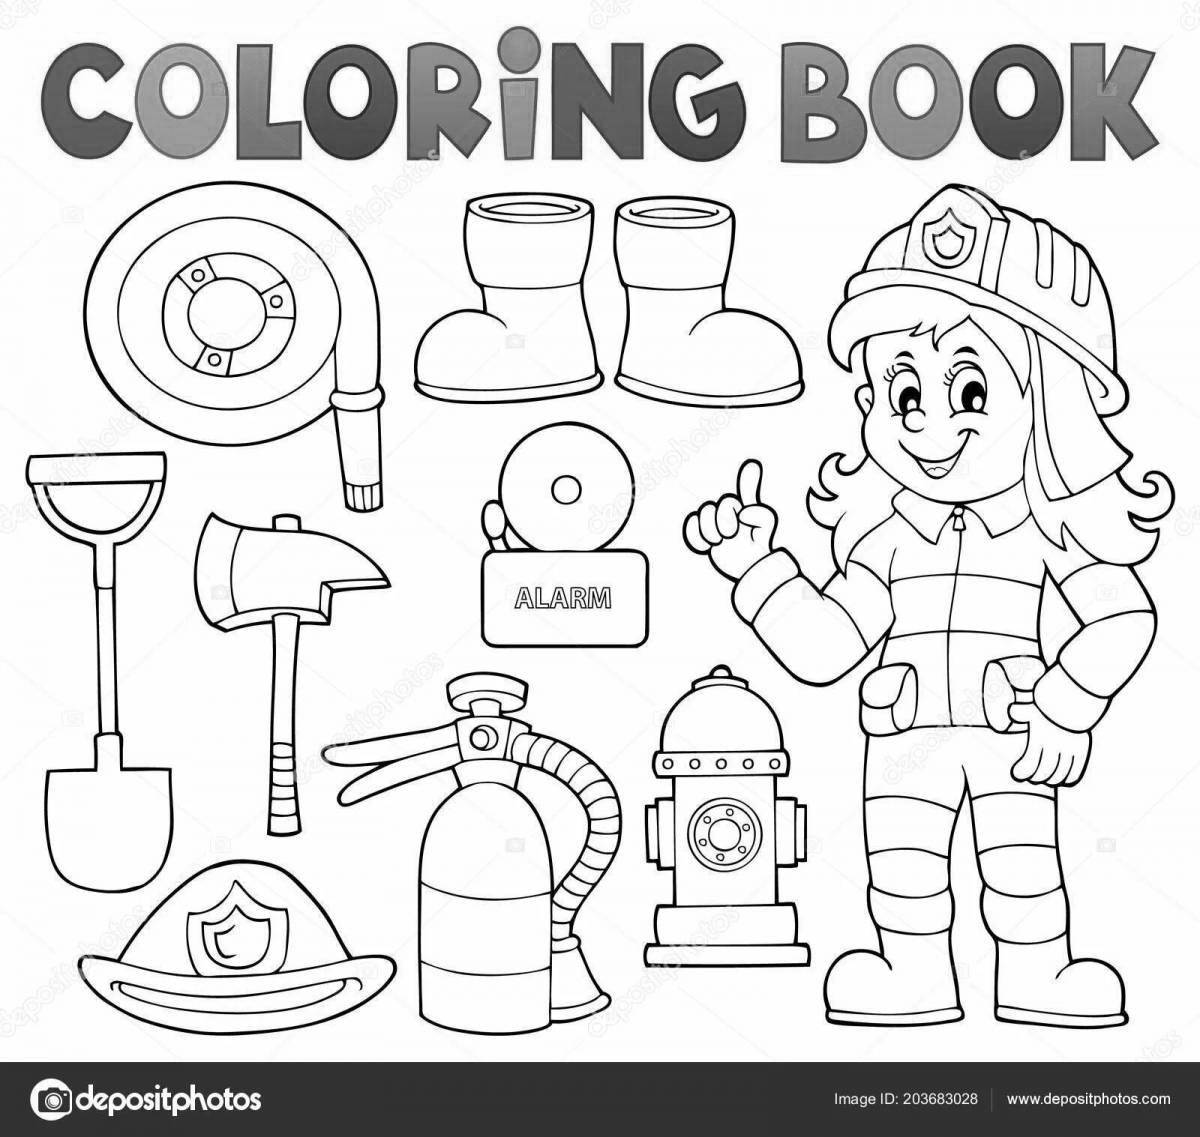 Нужен ли пожарный щит в ДОУ (детском саду)?